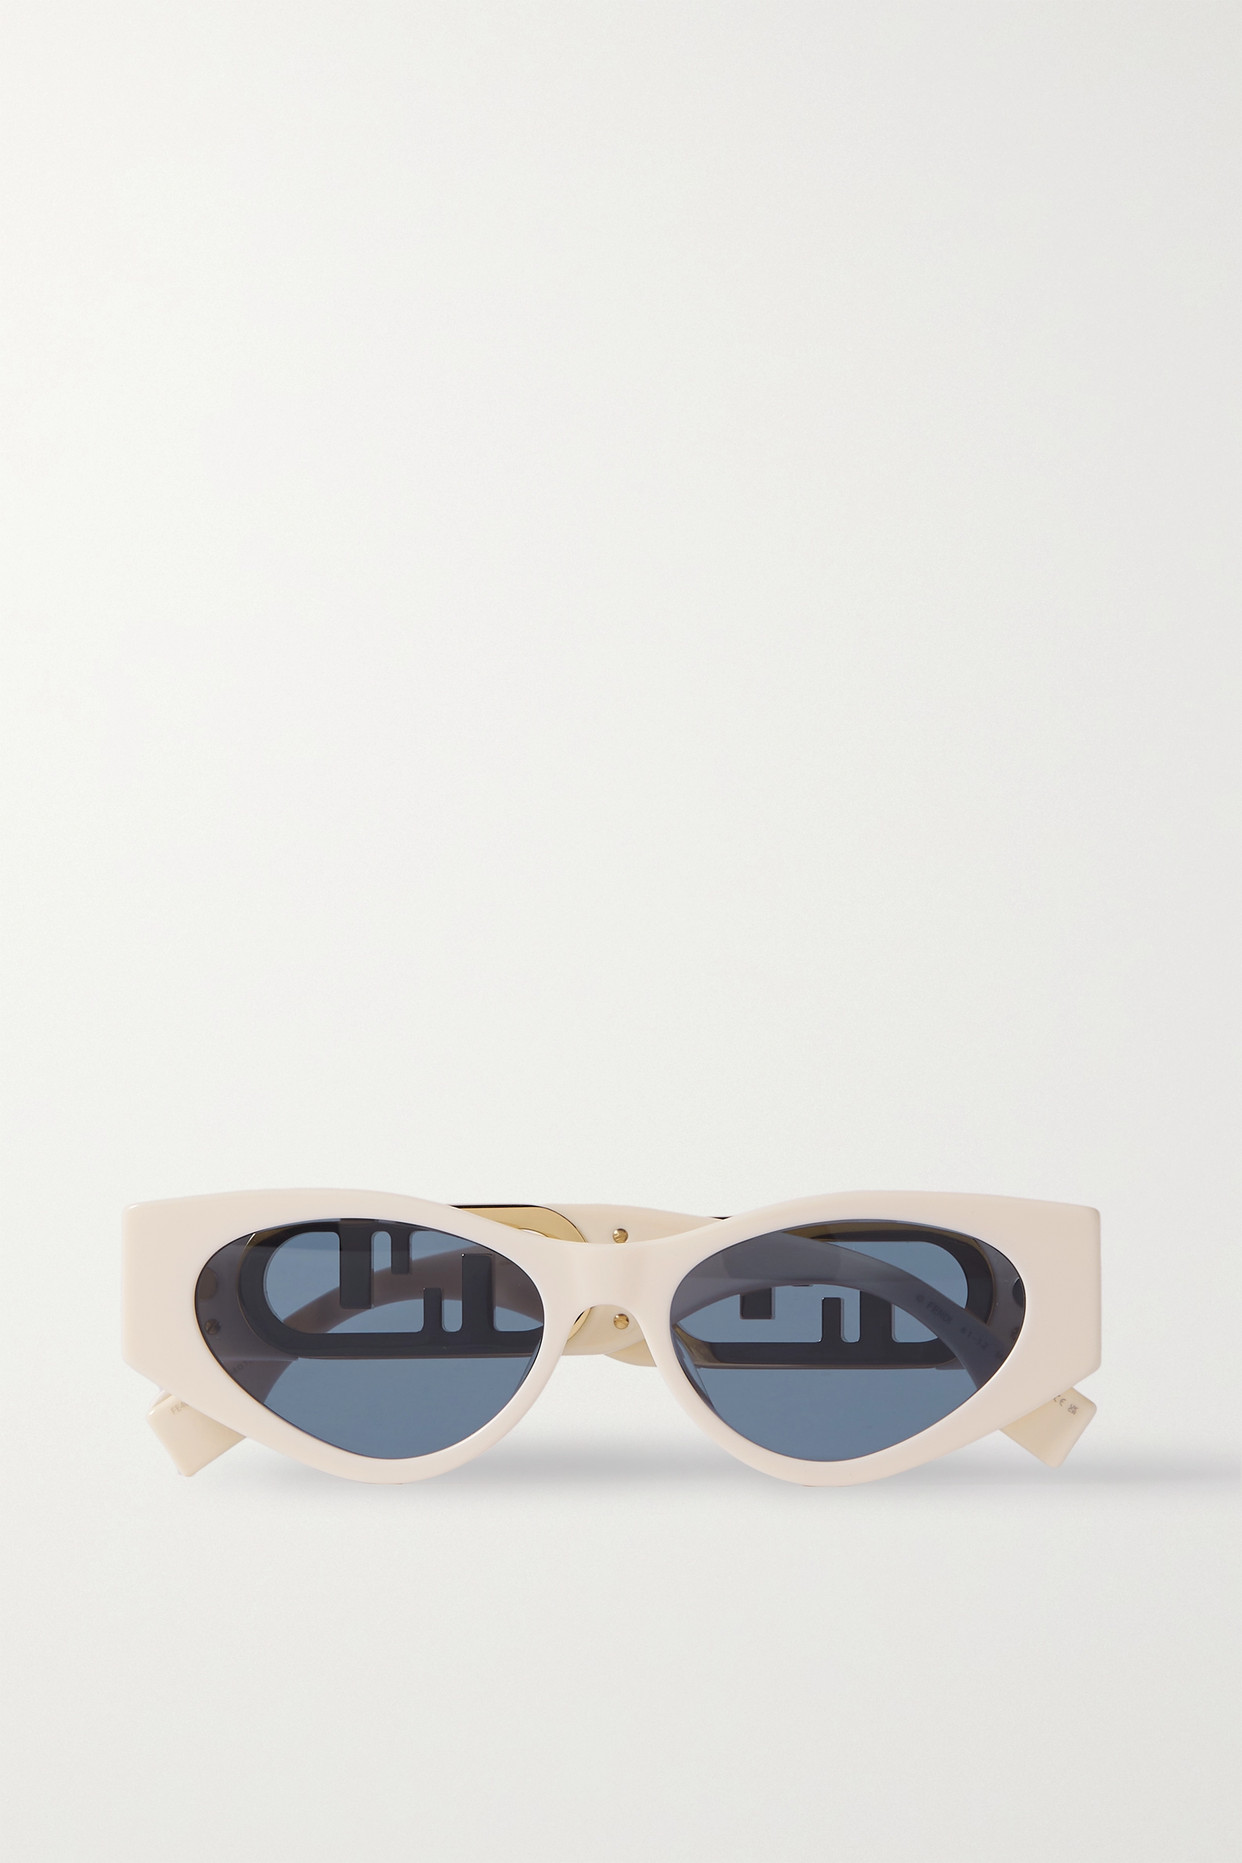 Fendi - Cat-eye Acetate And Gold-tone Sunglasses - Ivory - one size